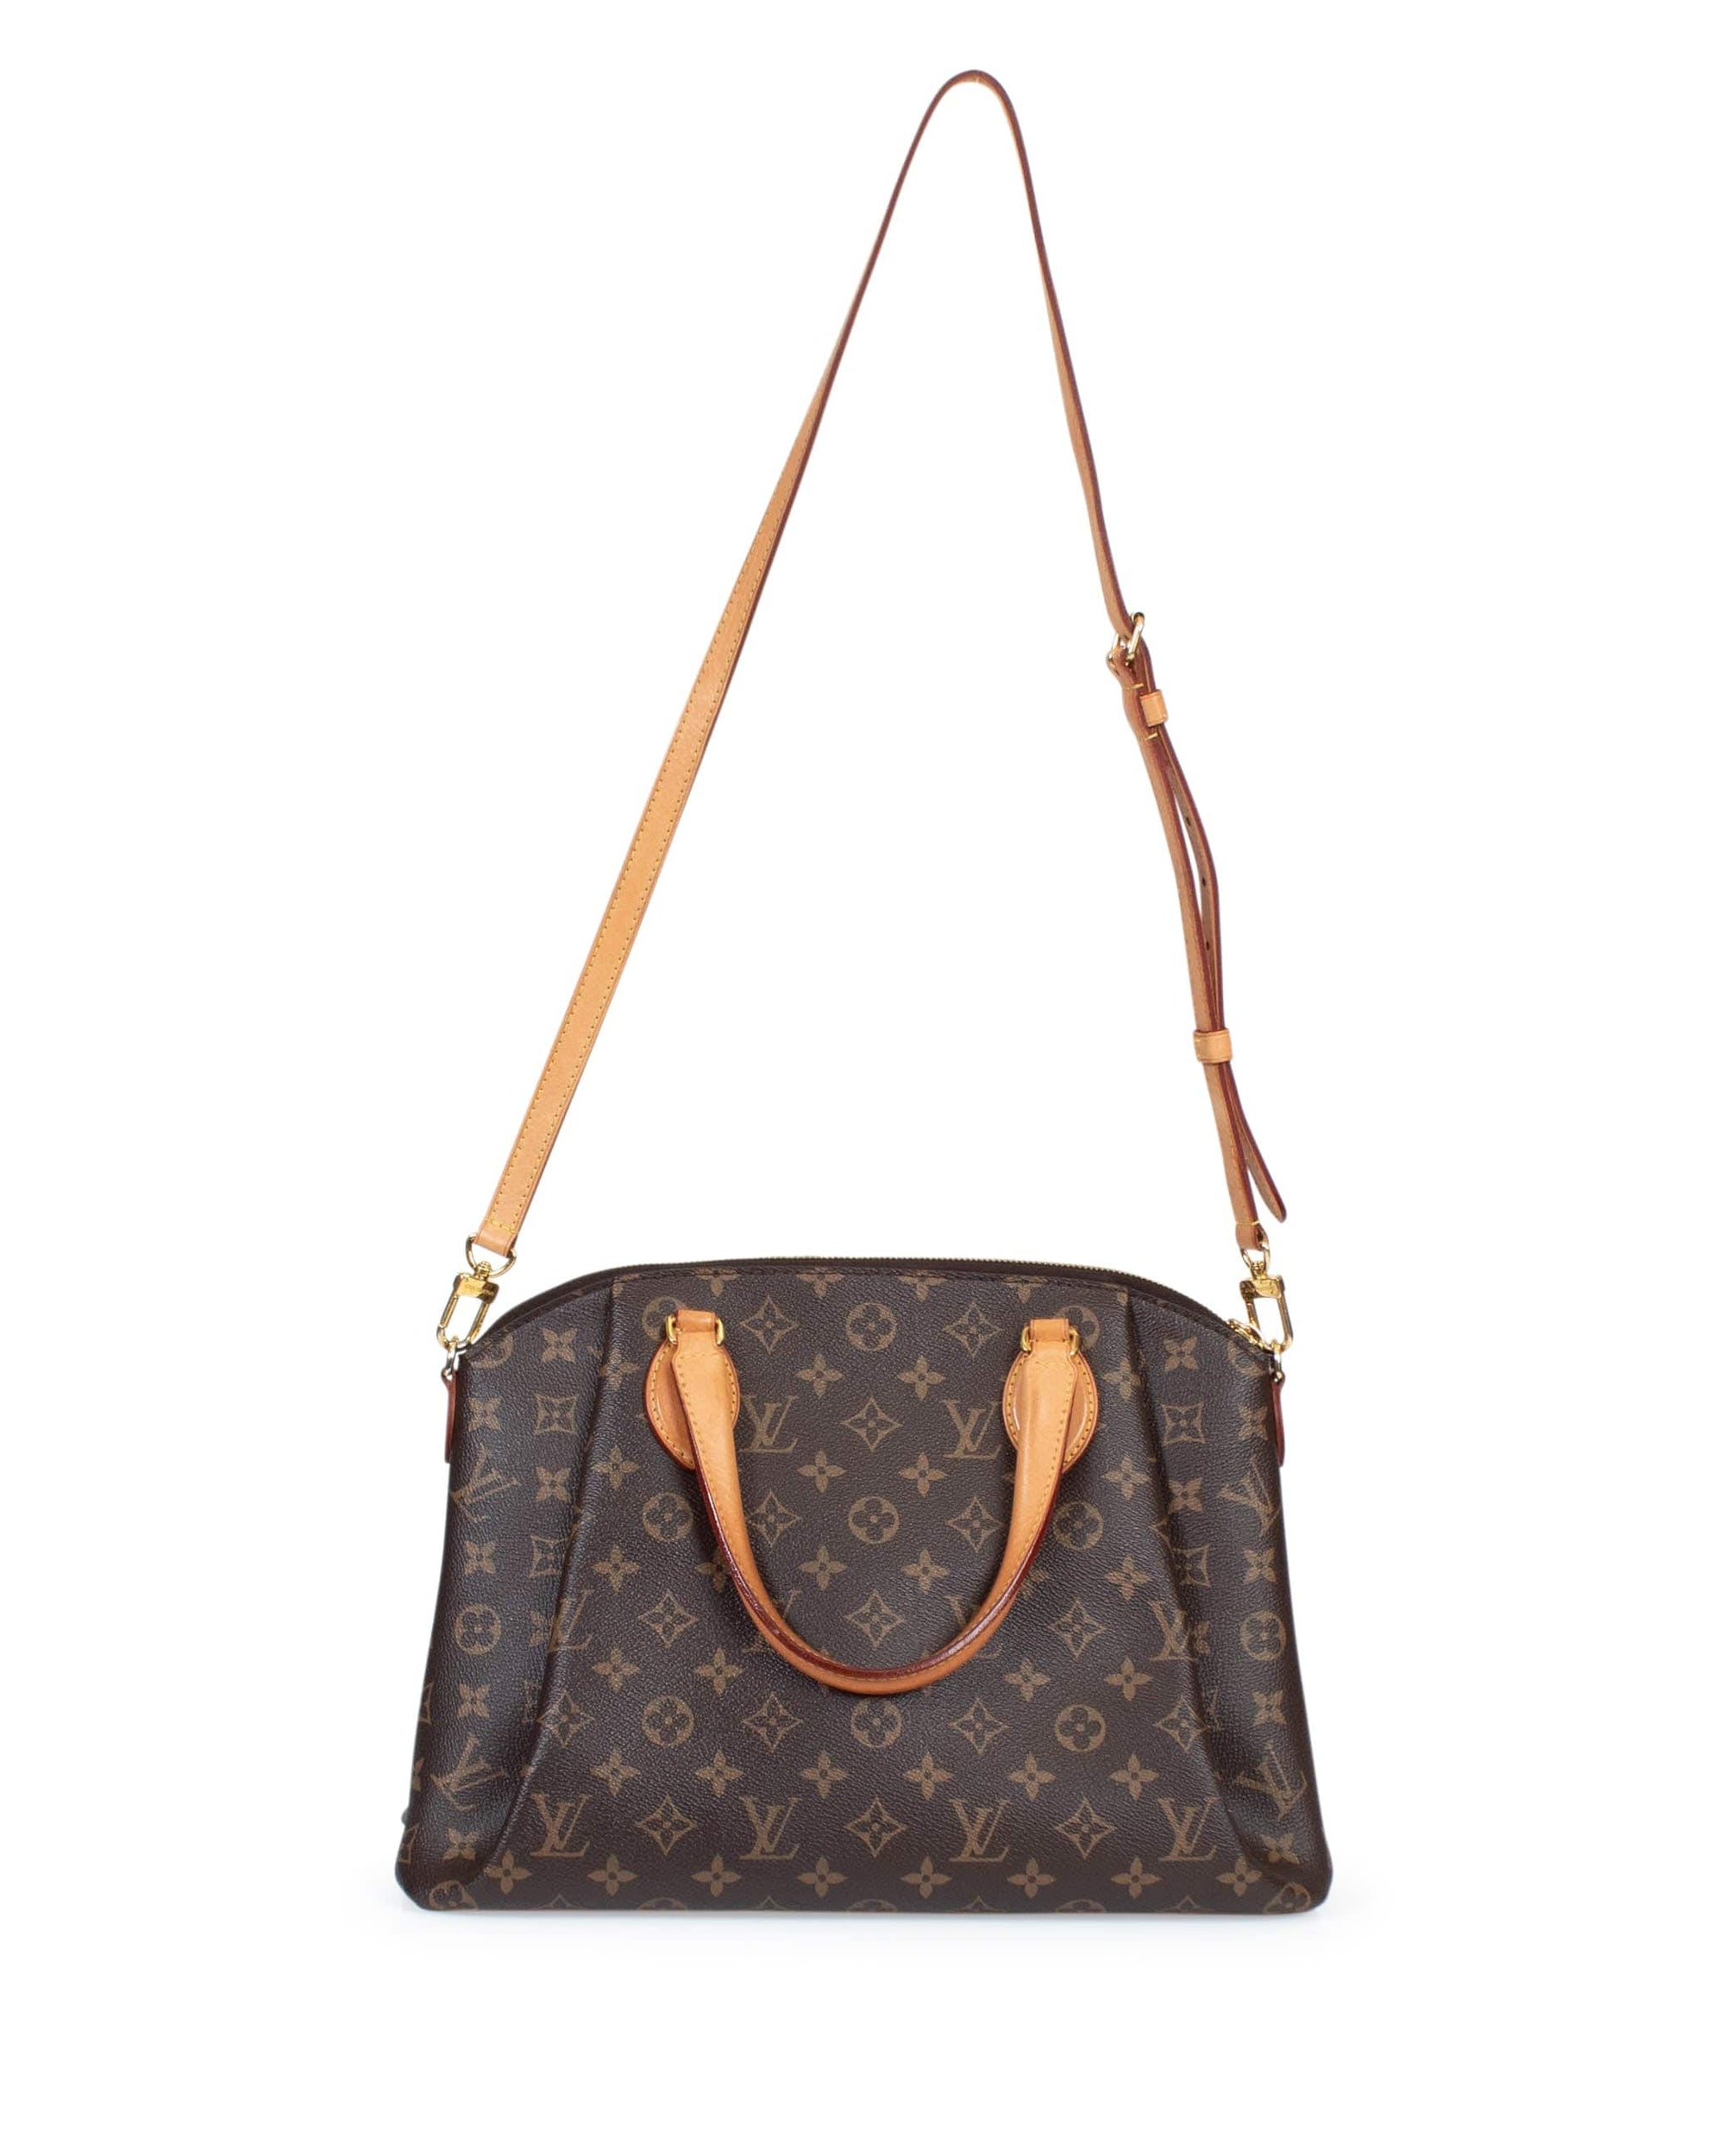 Louis Vuitton, Bags, Speedy Sizes